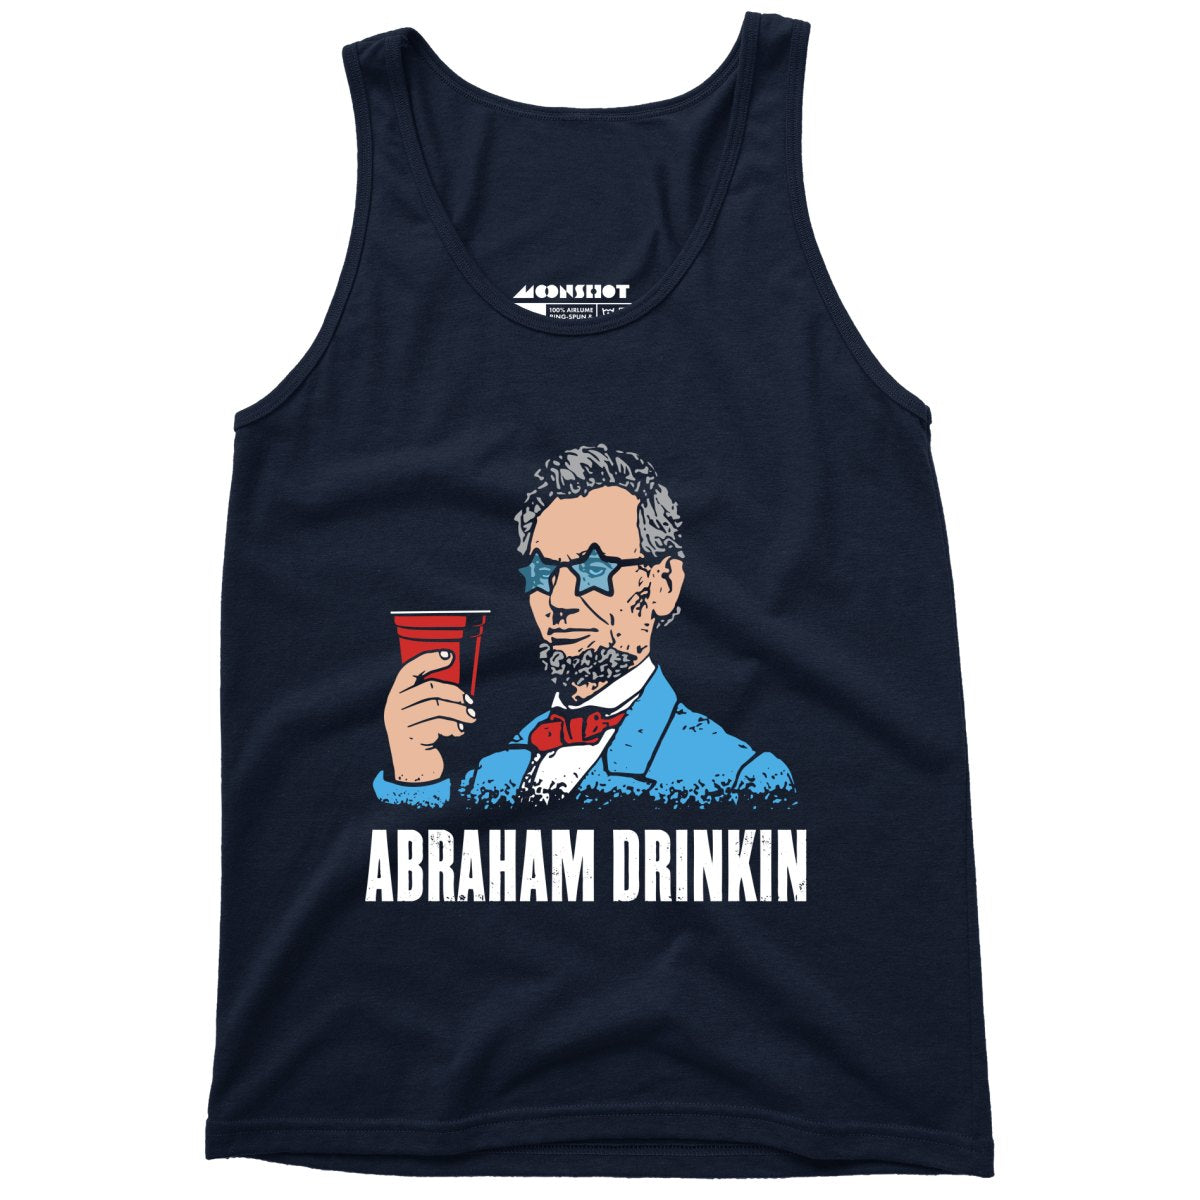 Abraham Drinkin - Unisex Tank Top